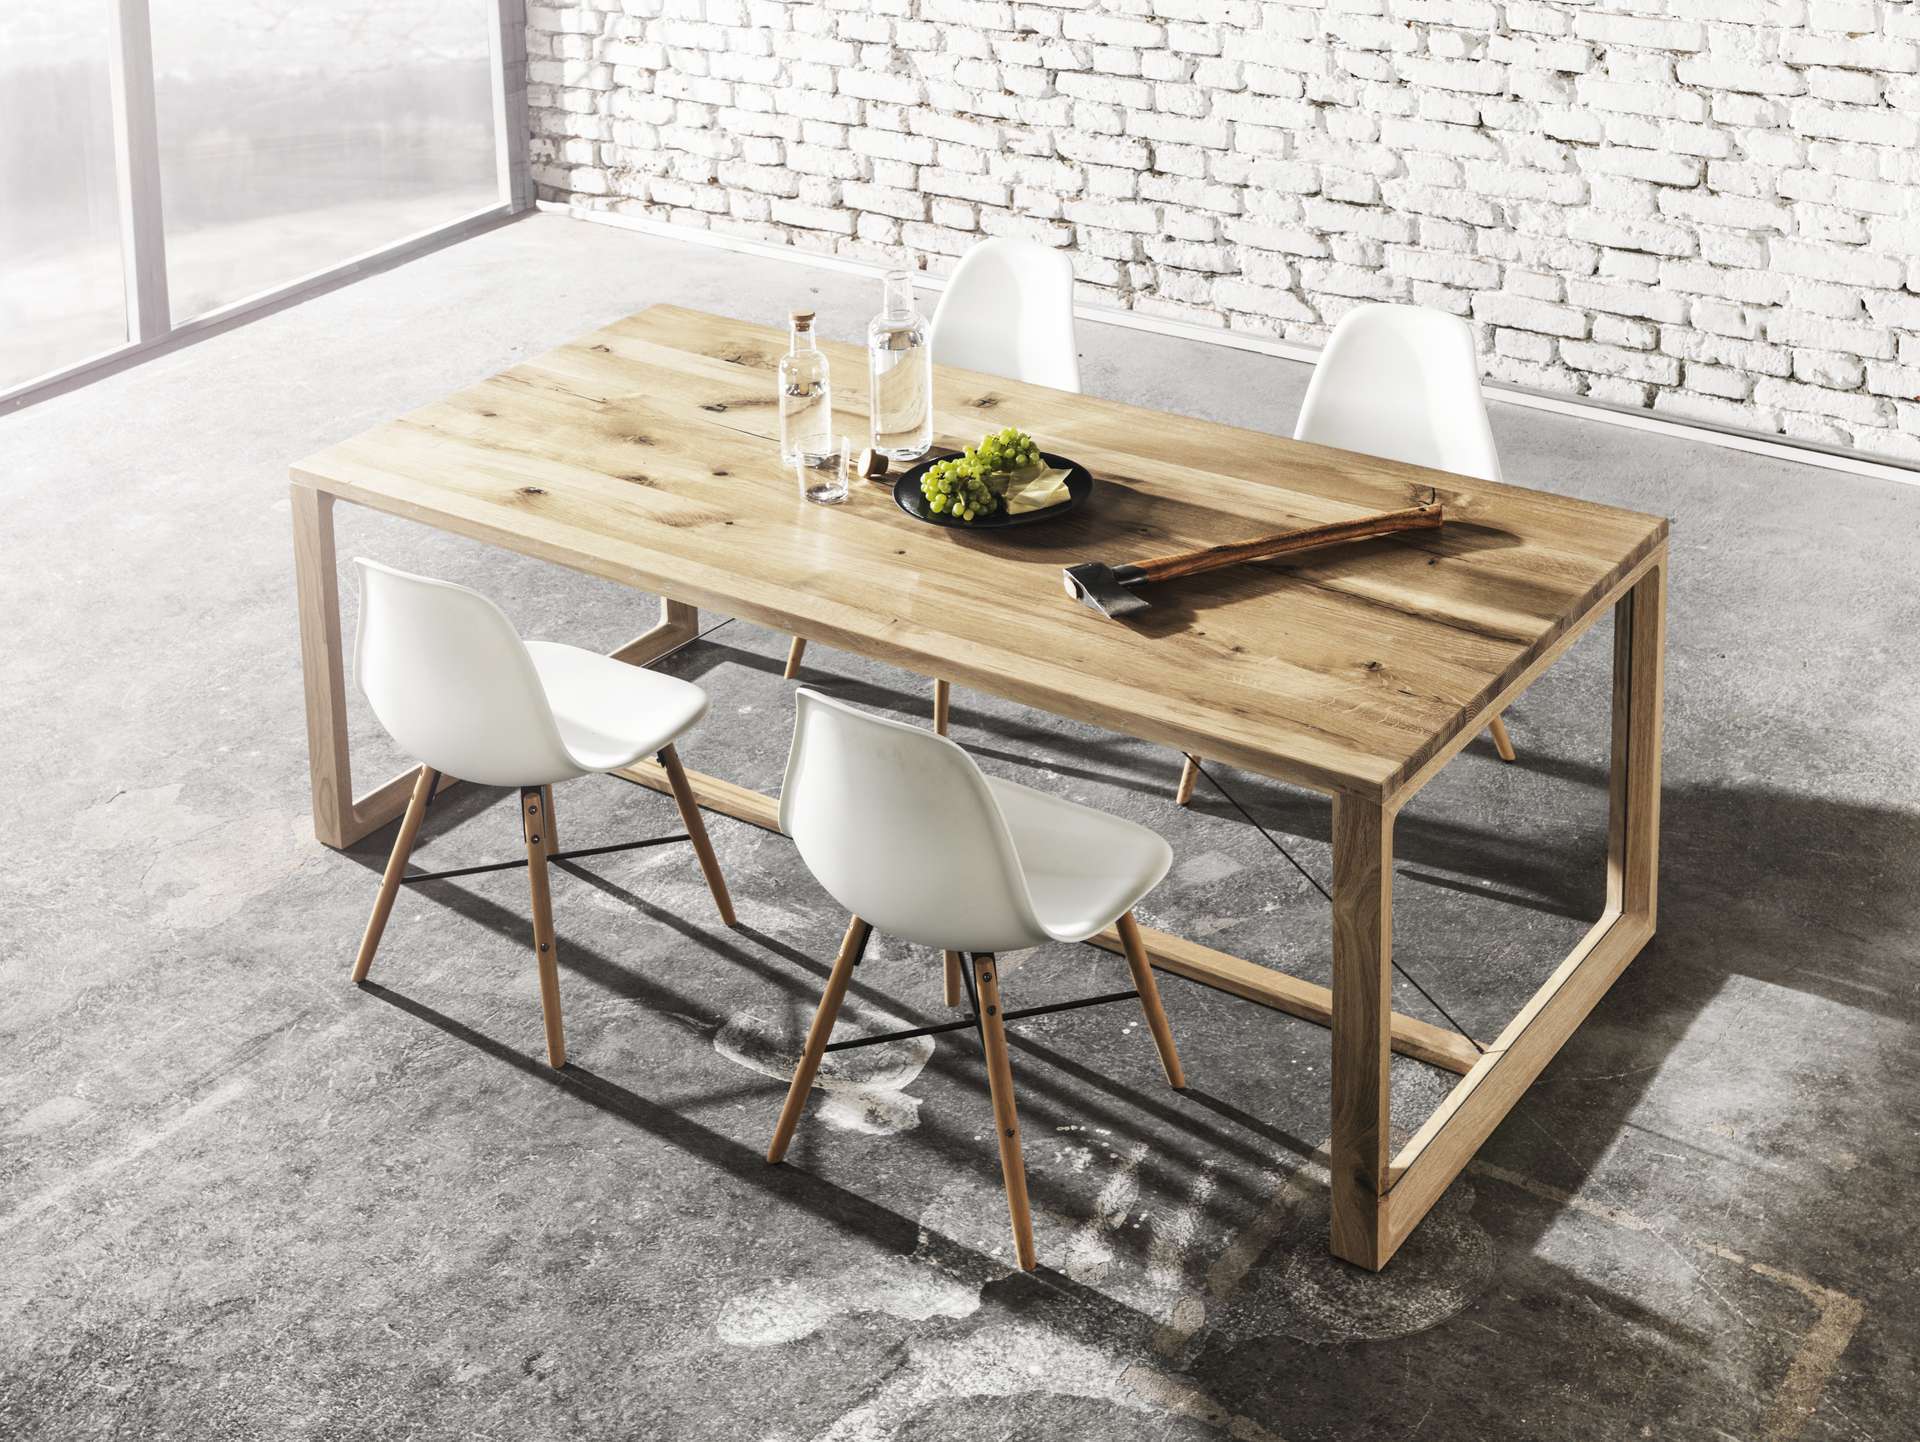 Massivholz Eichentisch mit charaktervollen Tischplatte bestückt mit Designersessel. Der Tisch ist dekoriert mit einer Obstschüssel, Wasserkaraffe und einer Axt.